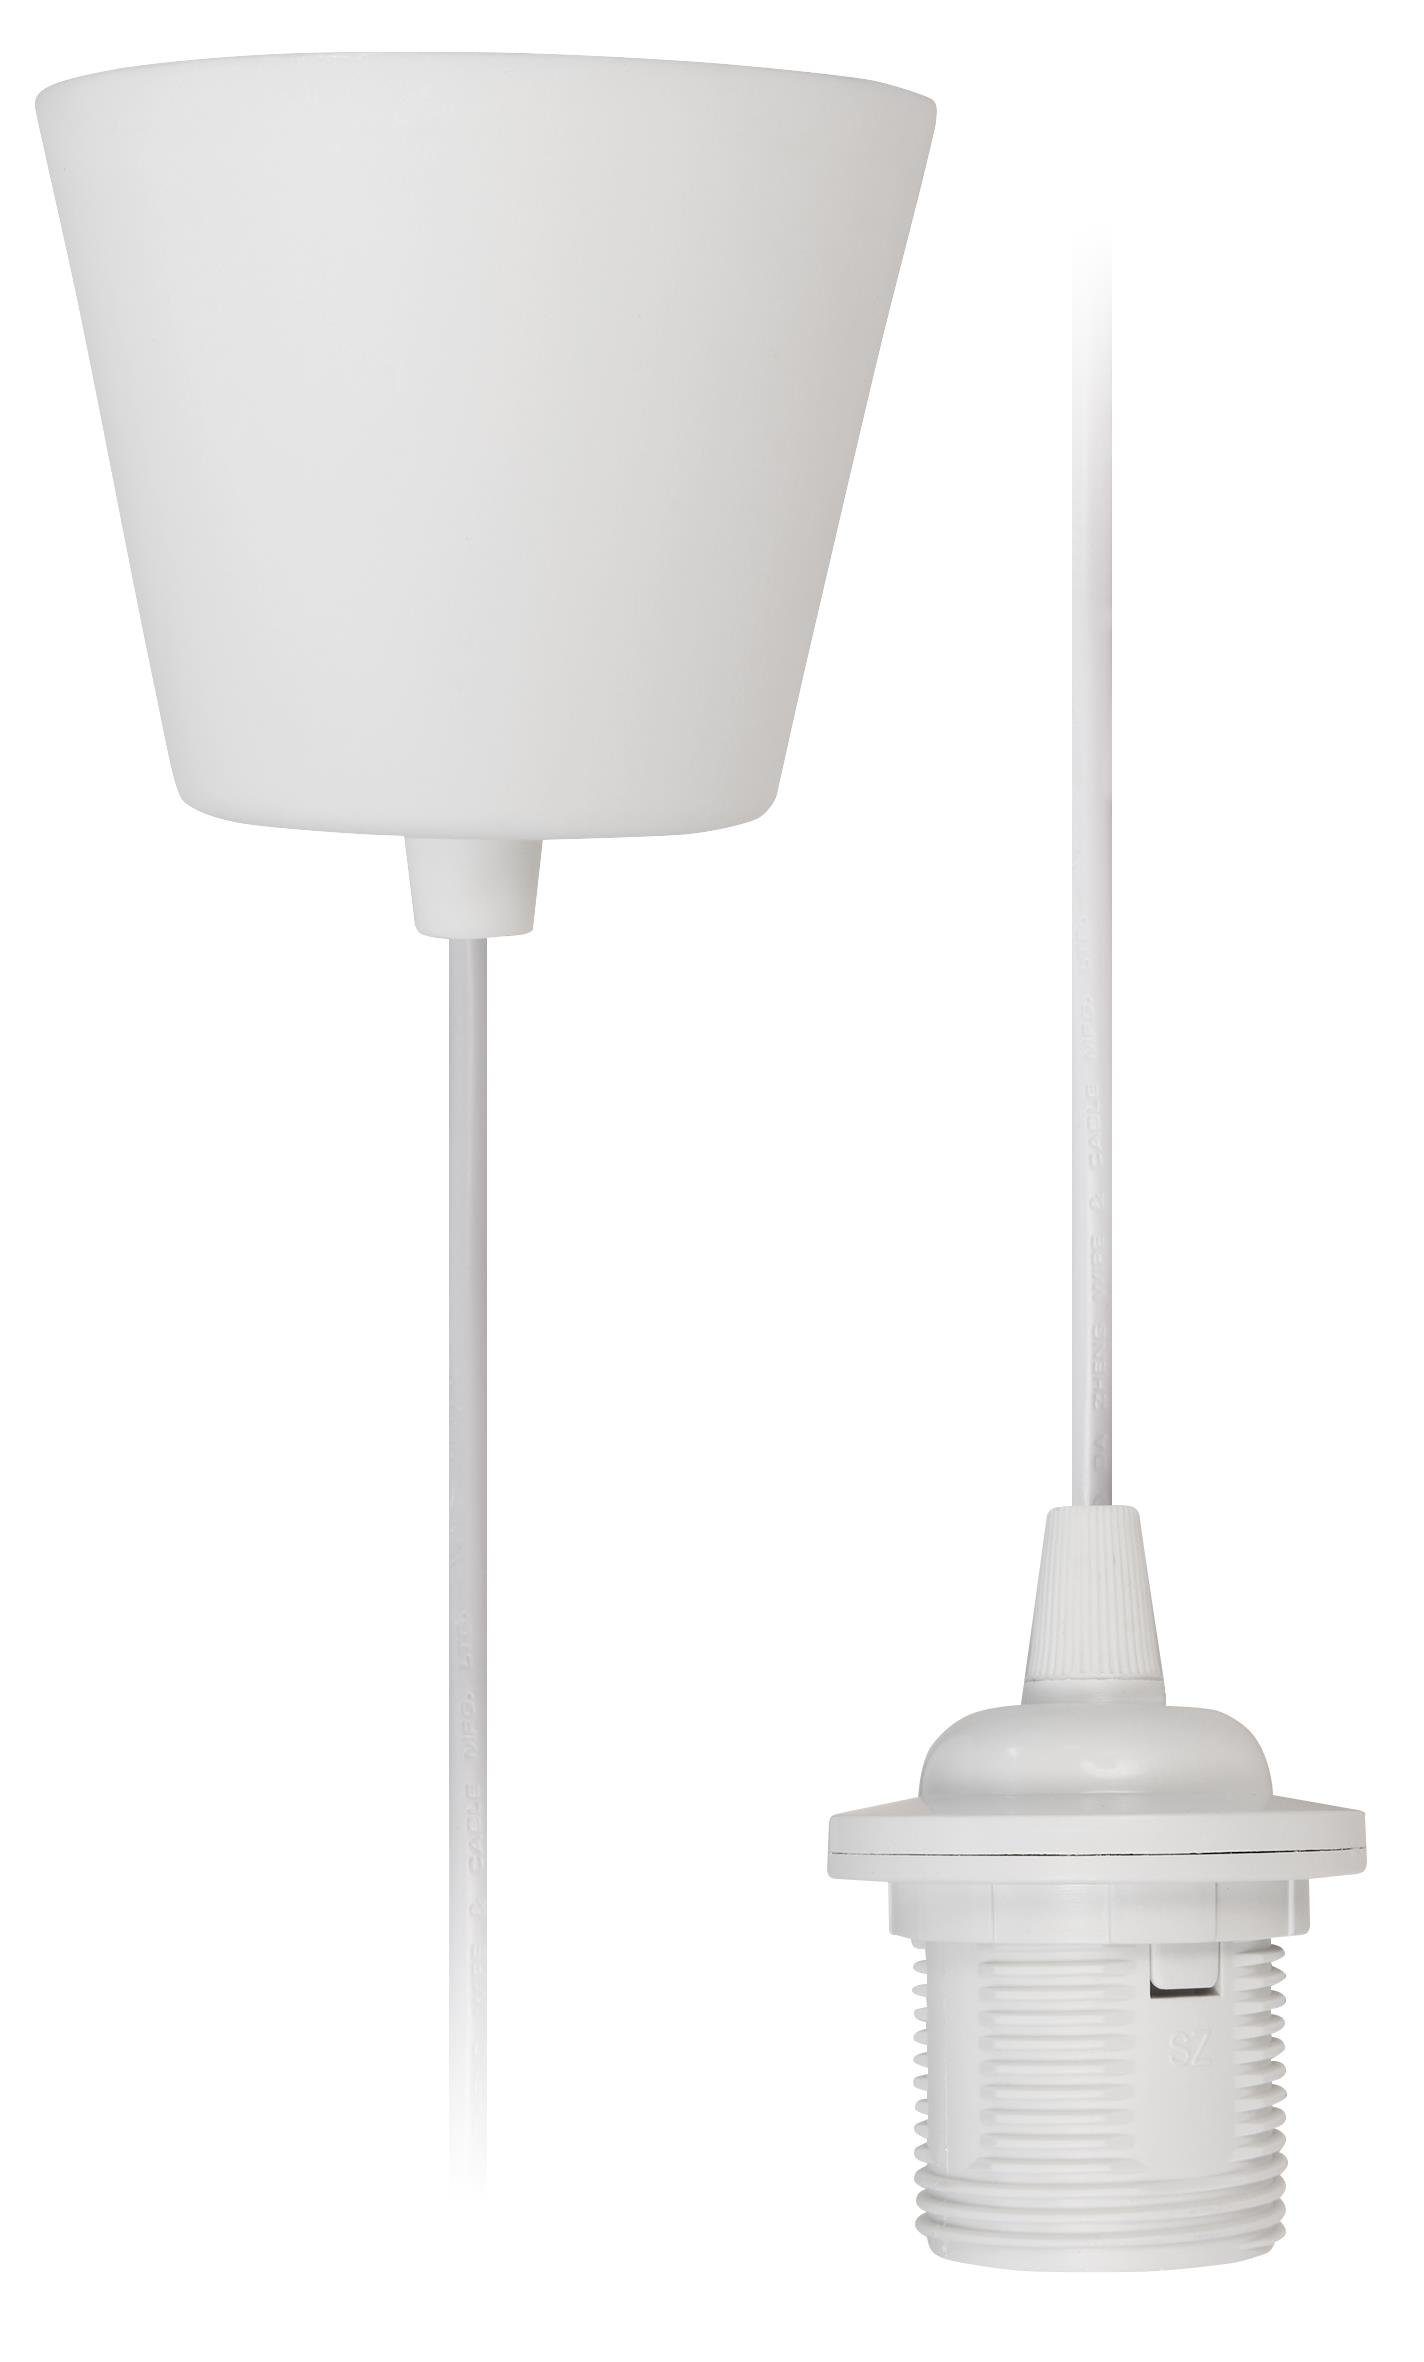 McShine Lampenfassung Lampenaufhängung McShine, E27 Fassung, weiß, 230V, 1,2m Kabel